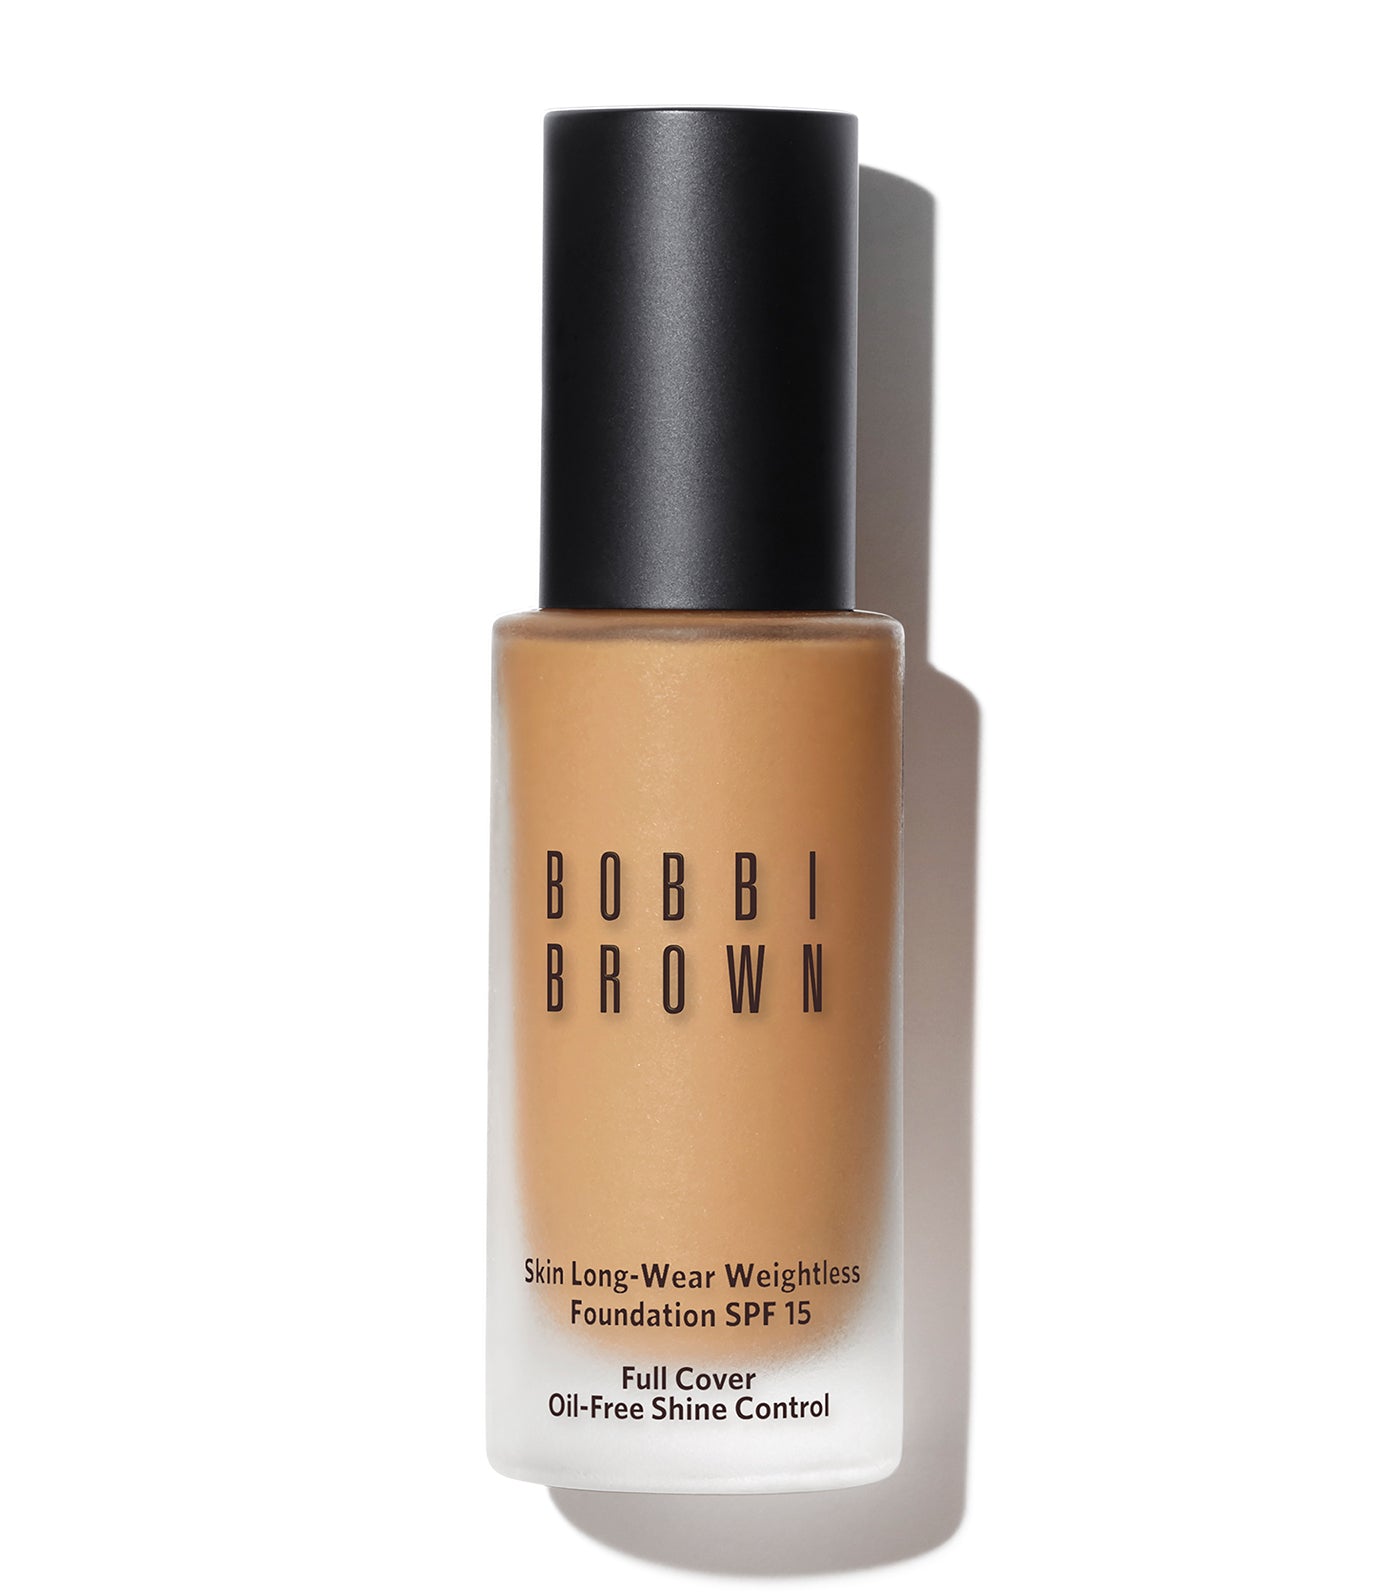 bobbi brown beige skin long-wear weightless foundation spf 15